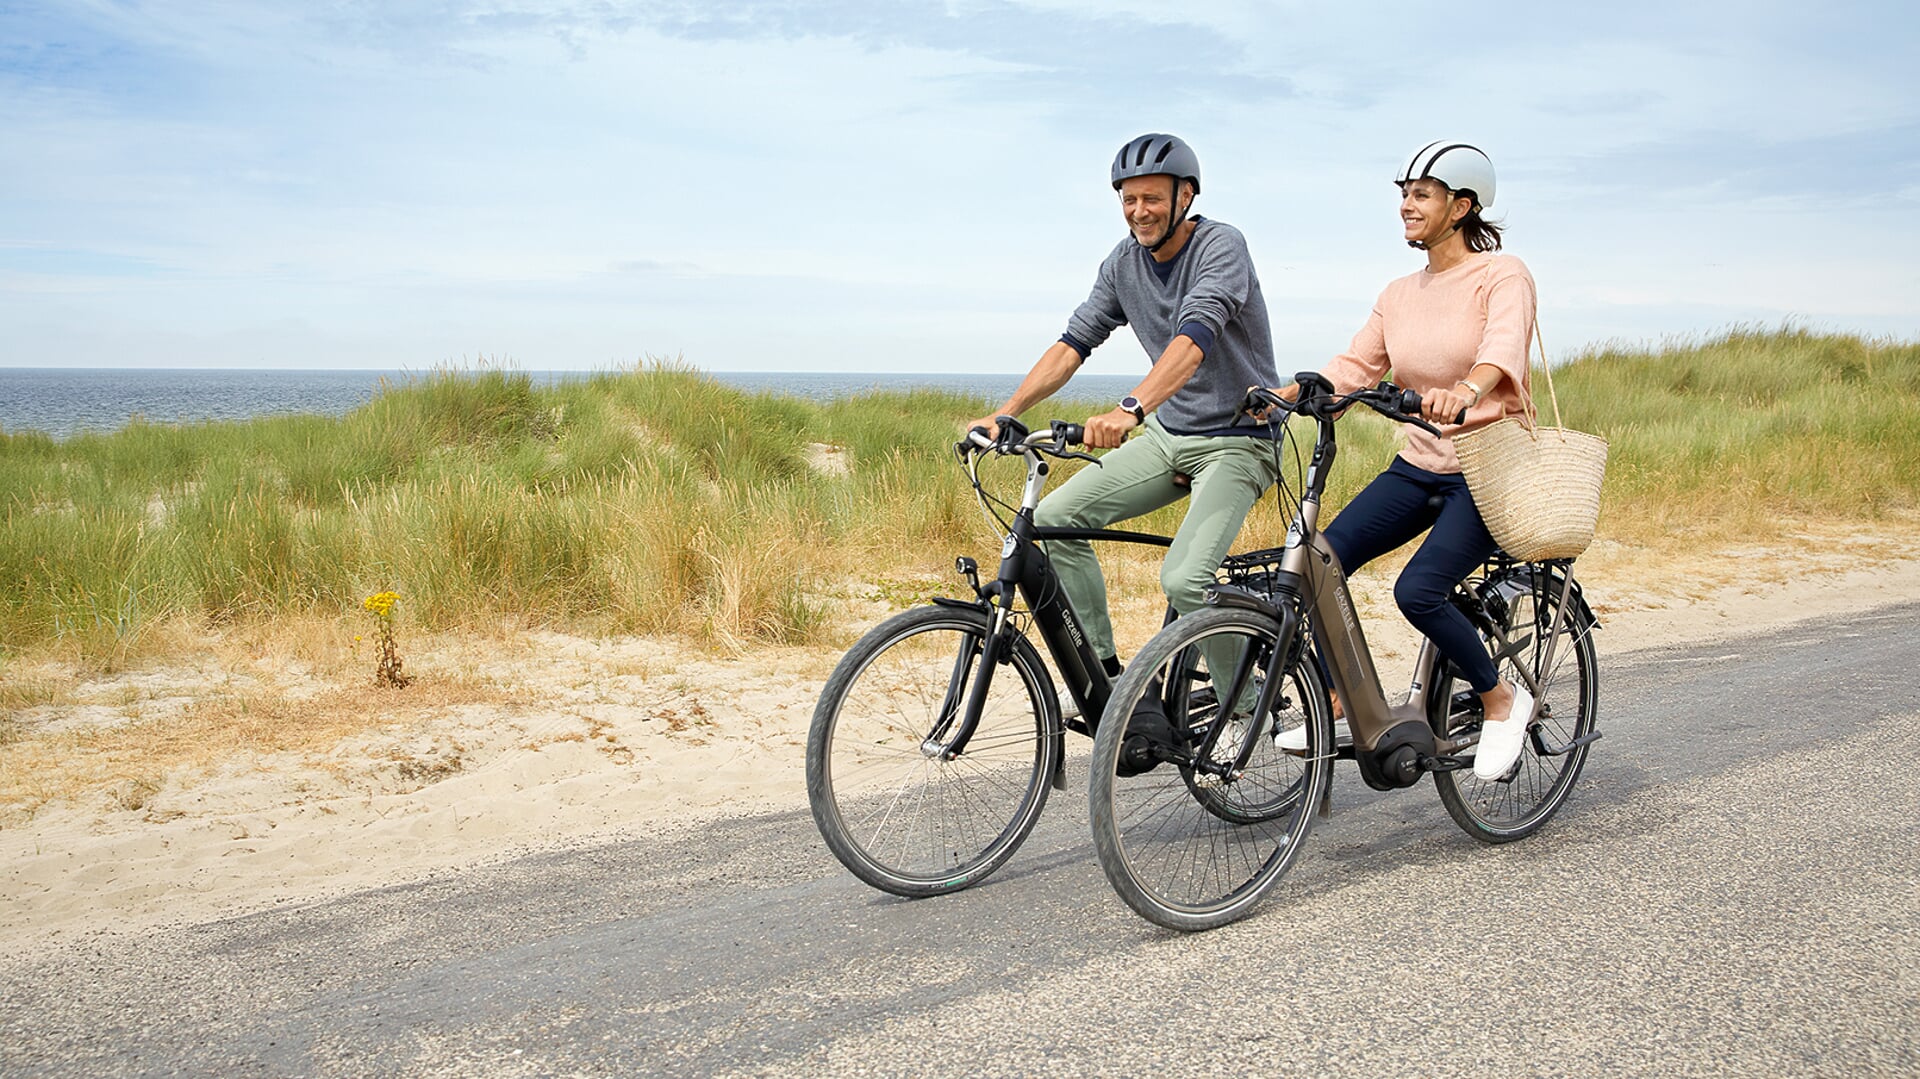 Betere concentratie, stressvermindering en meer vitaliteit. Zomaar een aantal voordelen van fietsen.